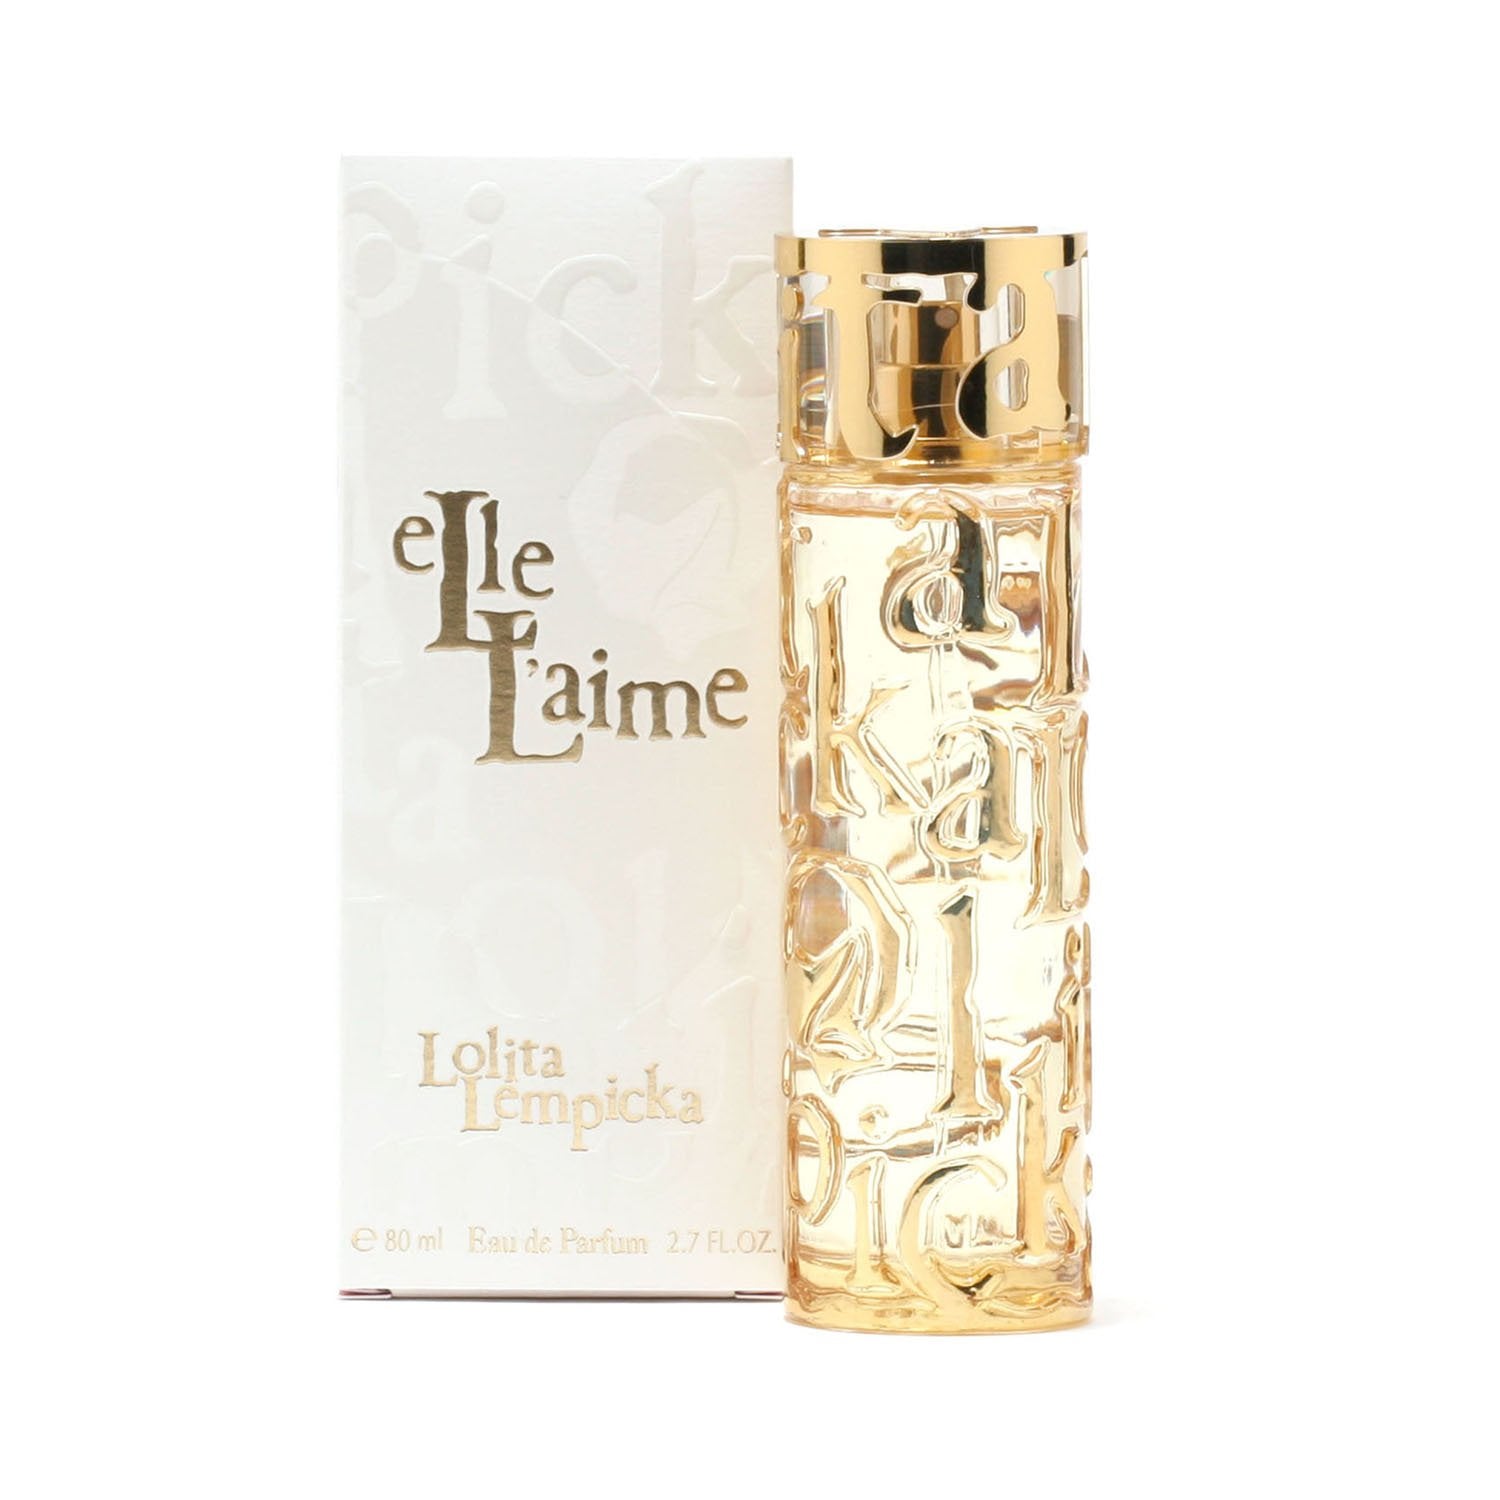 Perfume - LOLITA LEMPICKA ELLE L'AIME FOR WOMEN - EAU DE PARFUM SPRAY, 2.7 OZ